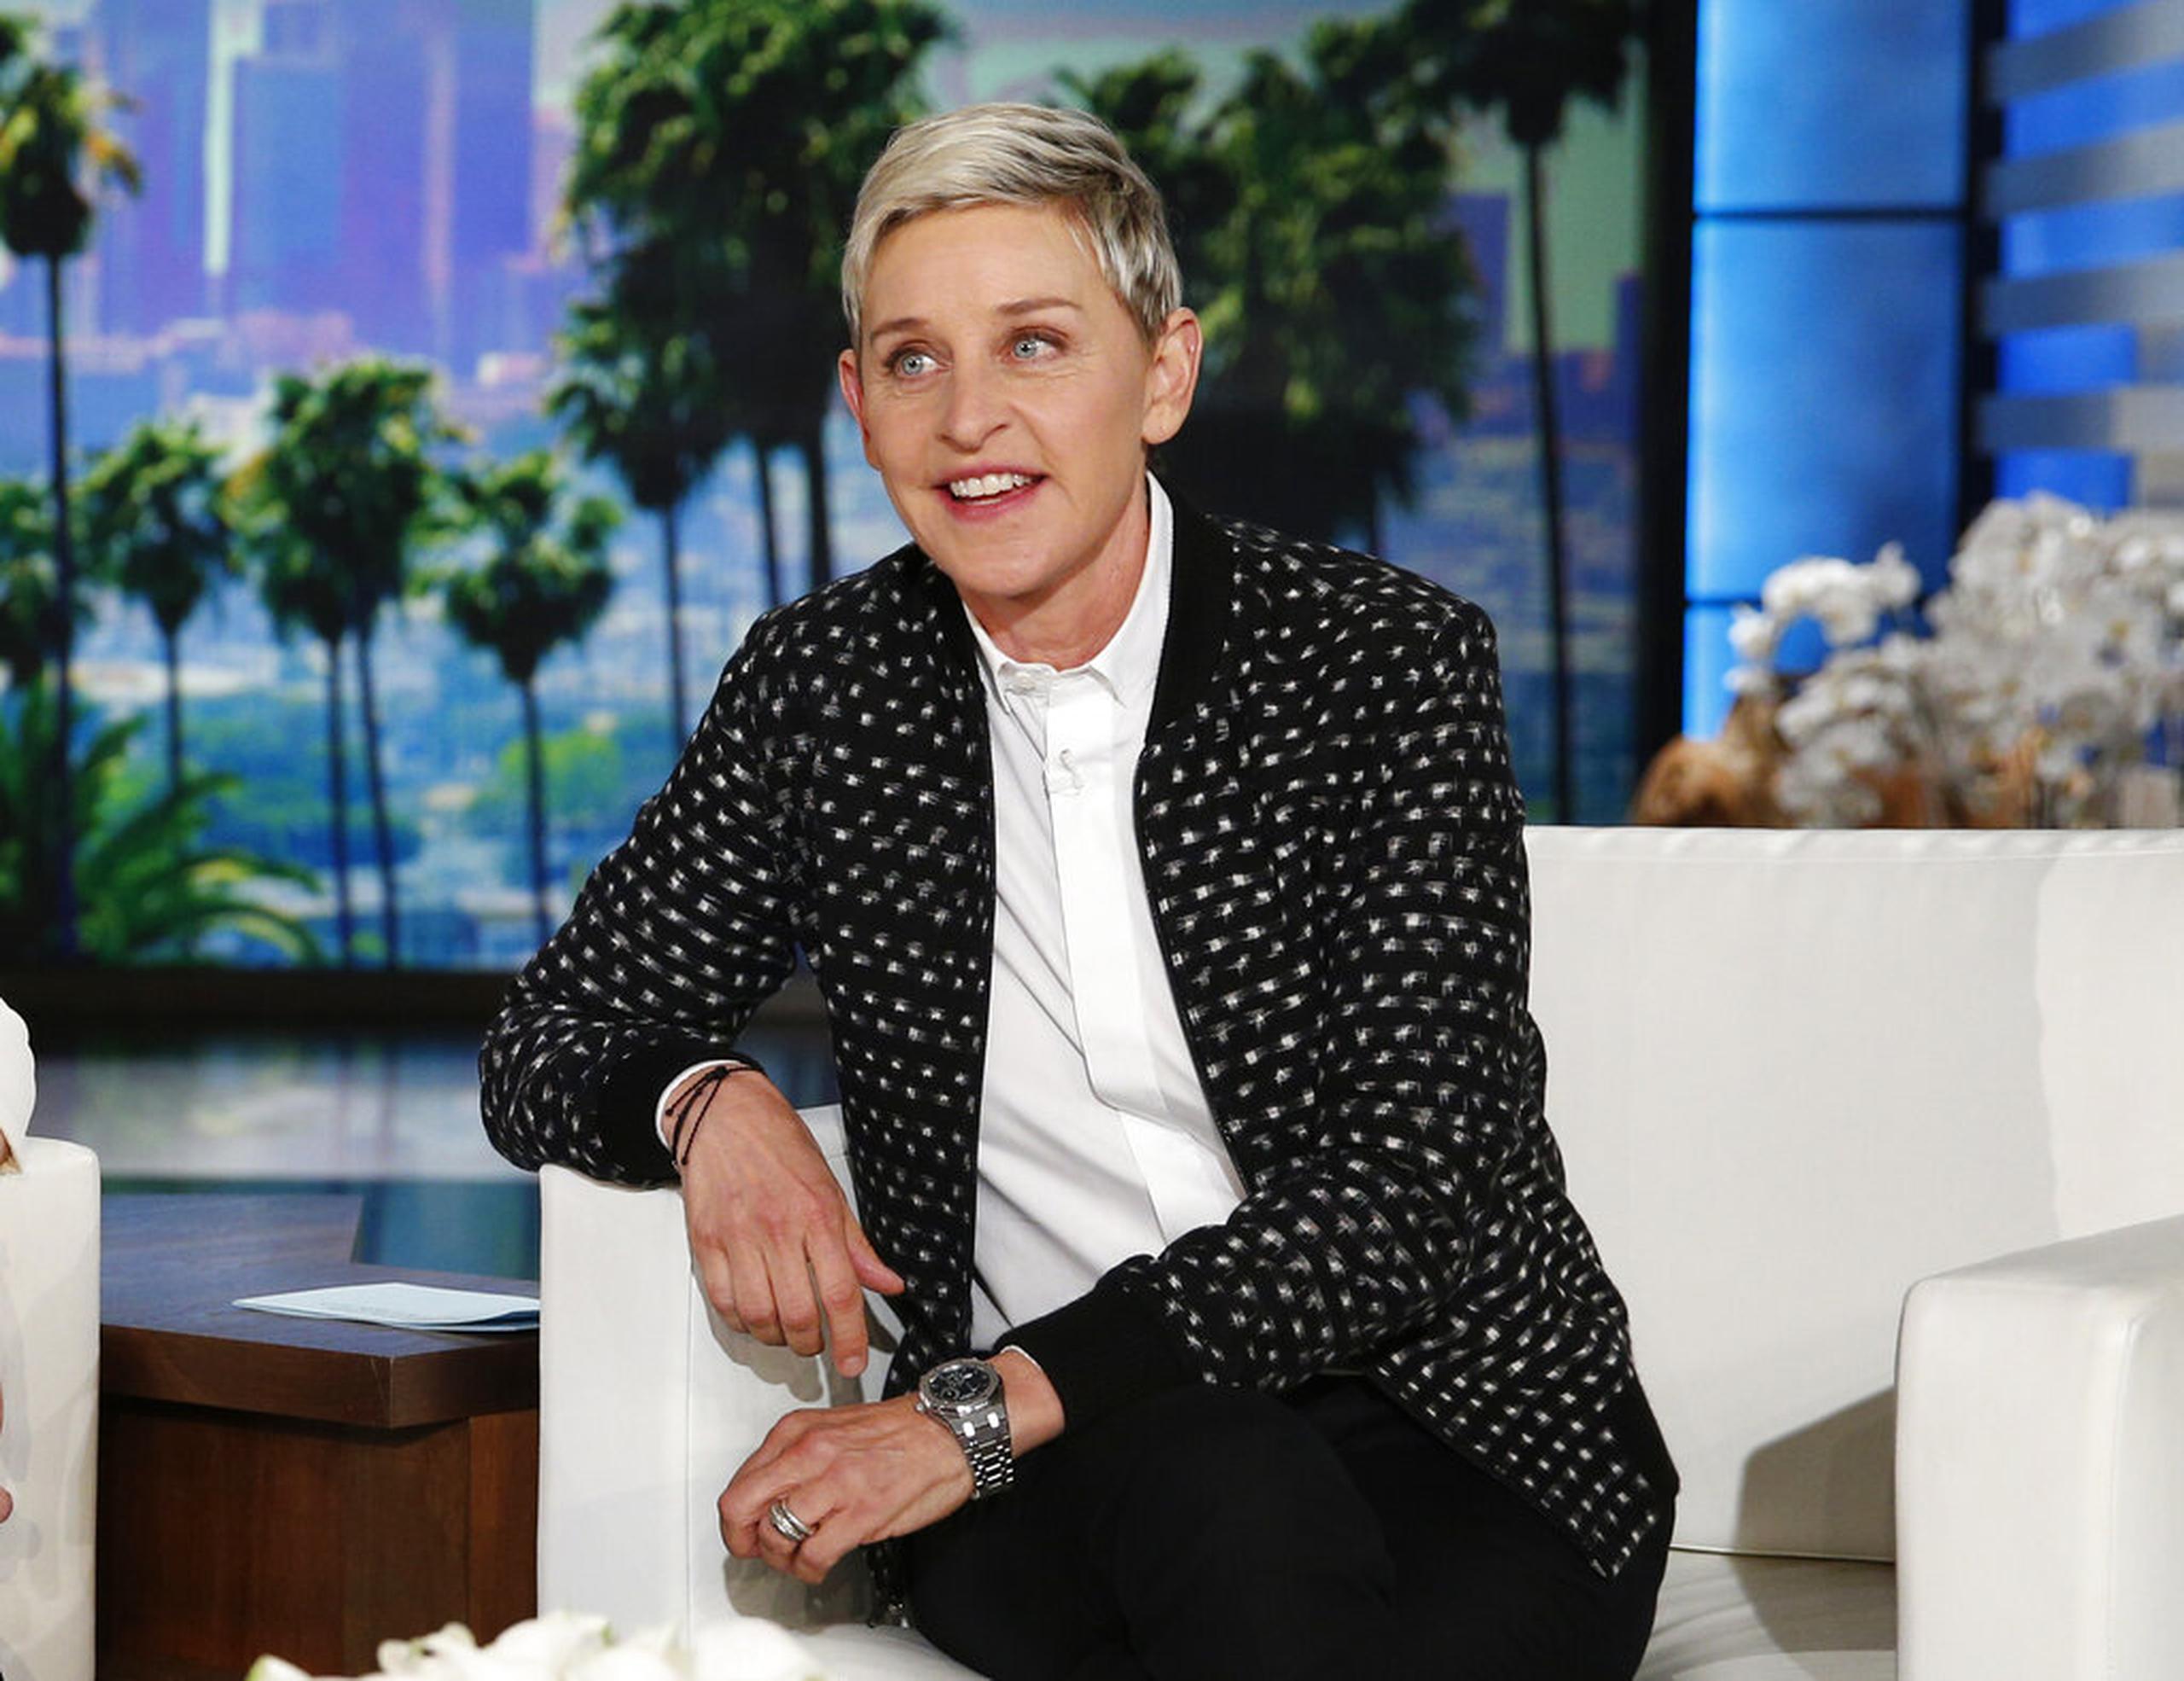 The Ellen DeGeneres Show lleva en emisión desde 2003, logró llevarse 65 premios Emmy y alcanzó un promedio de 2.5 millones de espectadores al día.